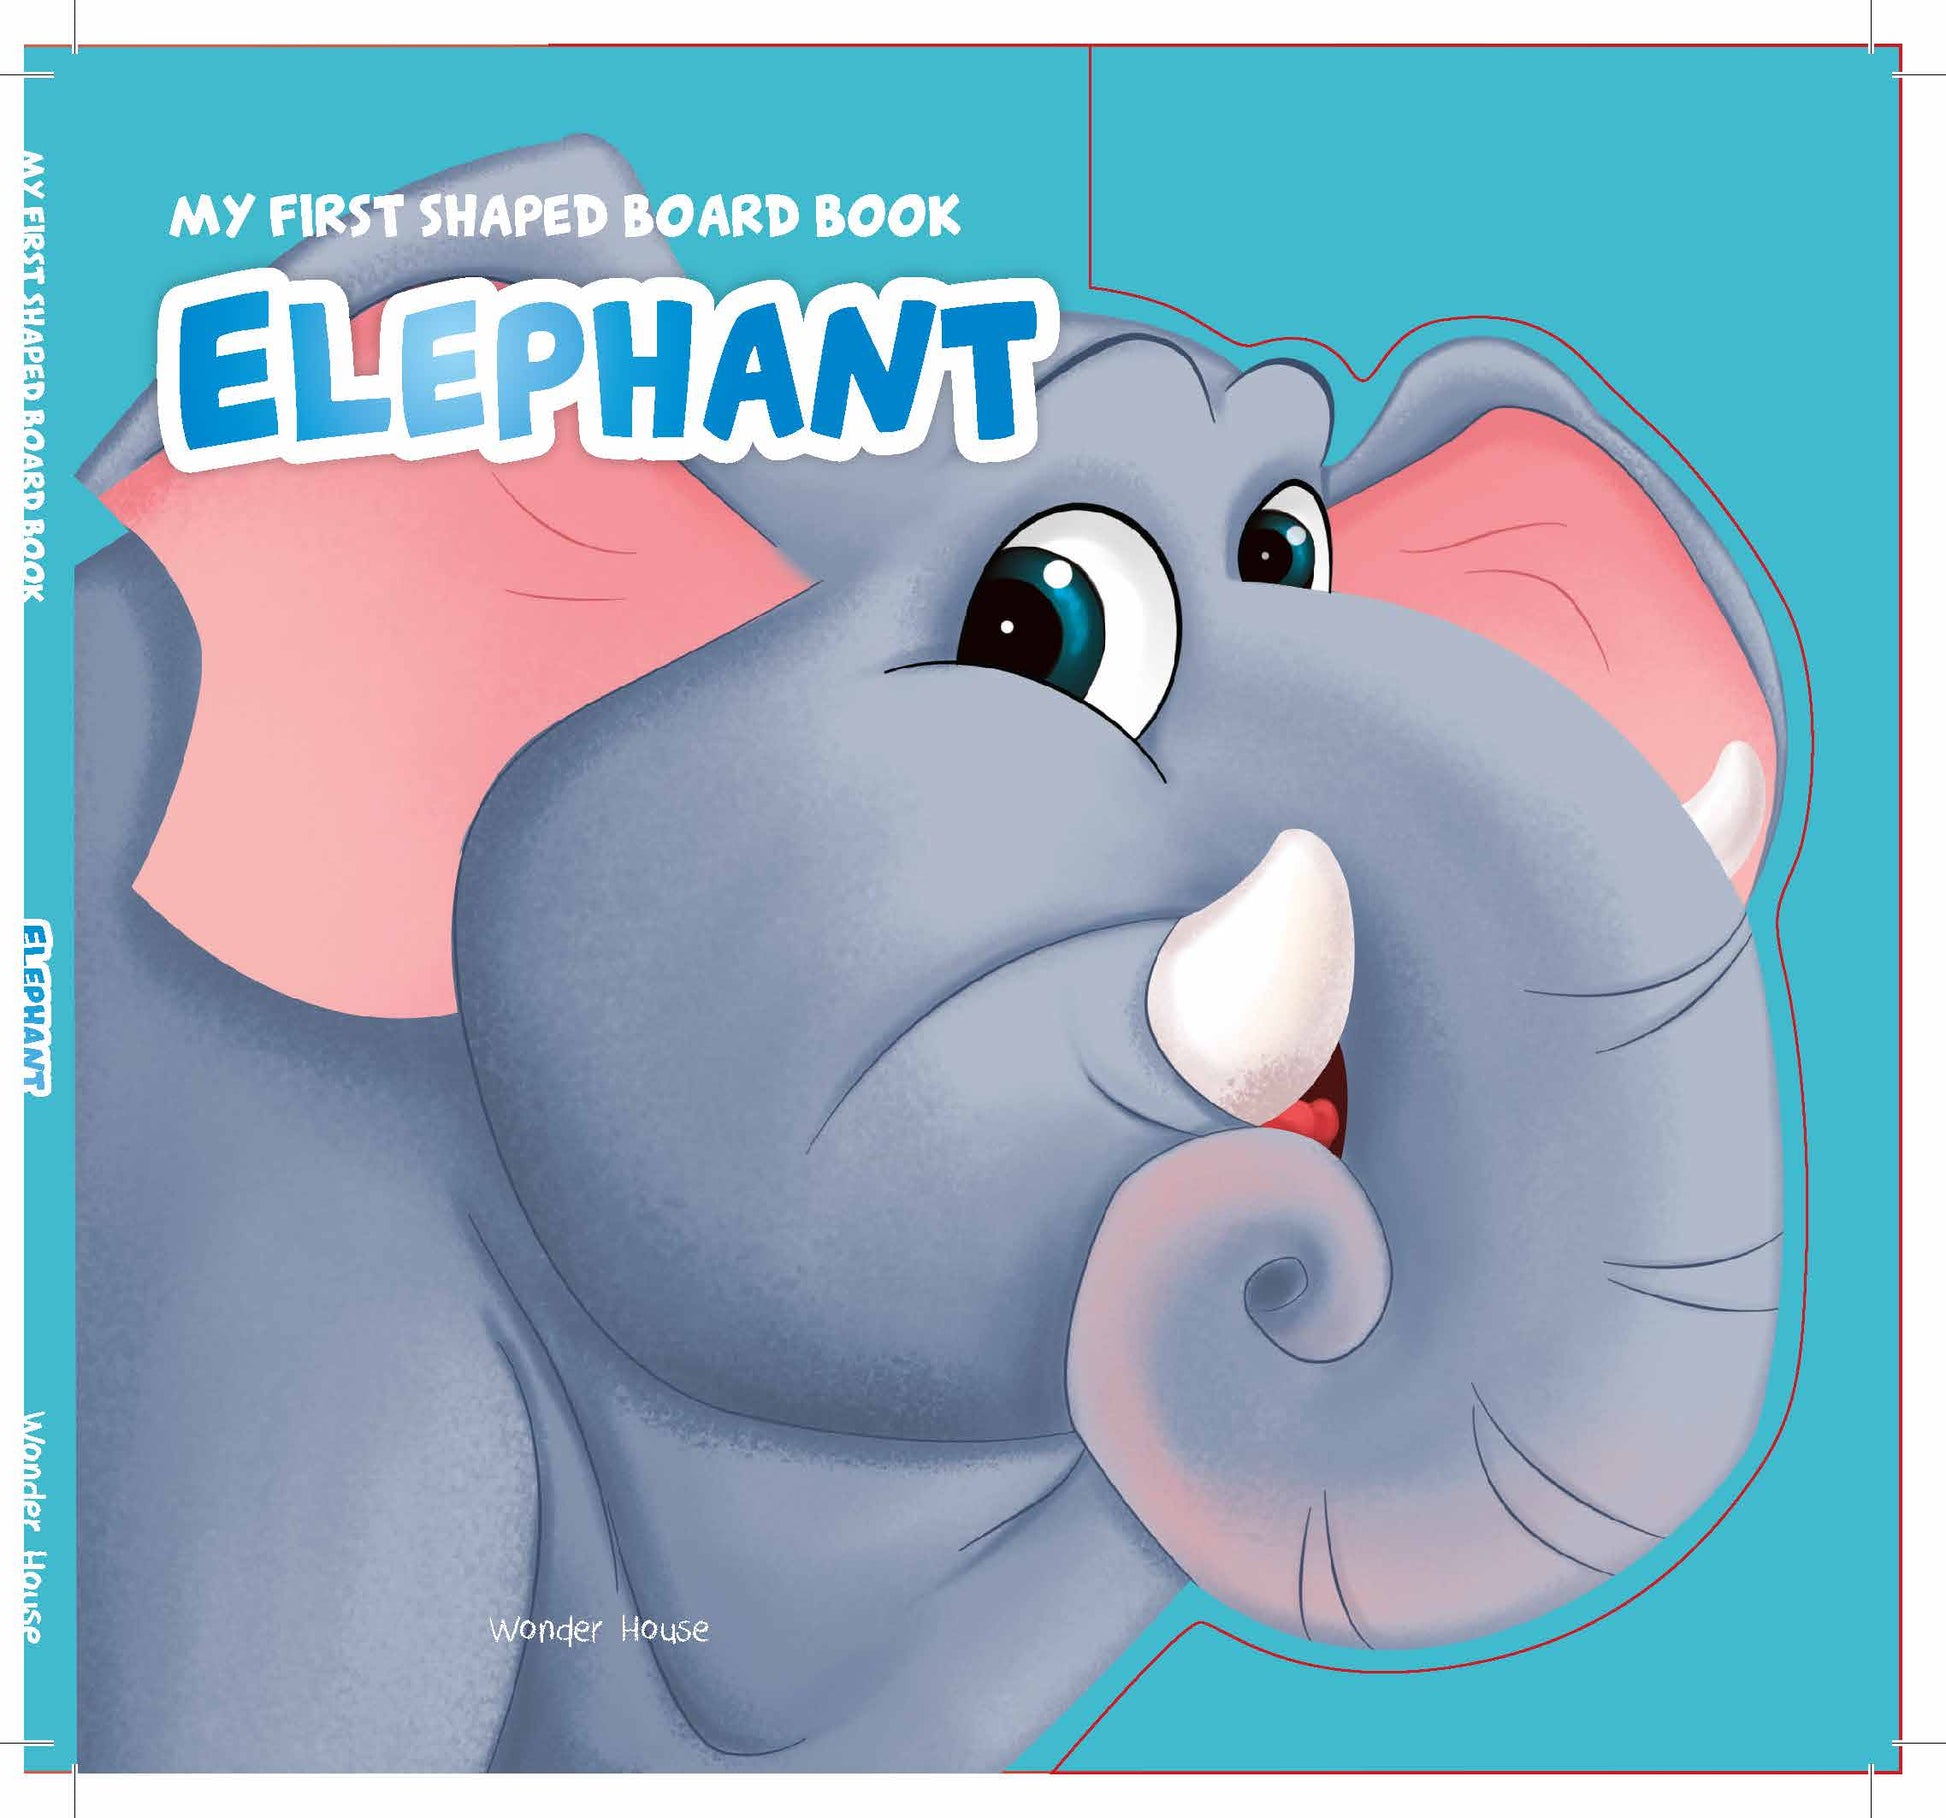 MyFirstShapedBoardbook- Elephant, Die-Cut Animals, Picture Book for Children